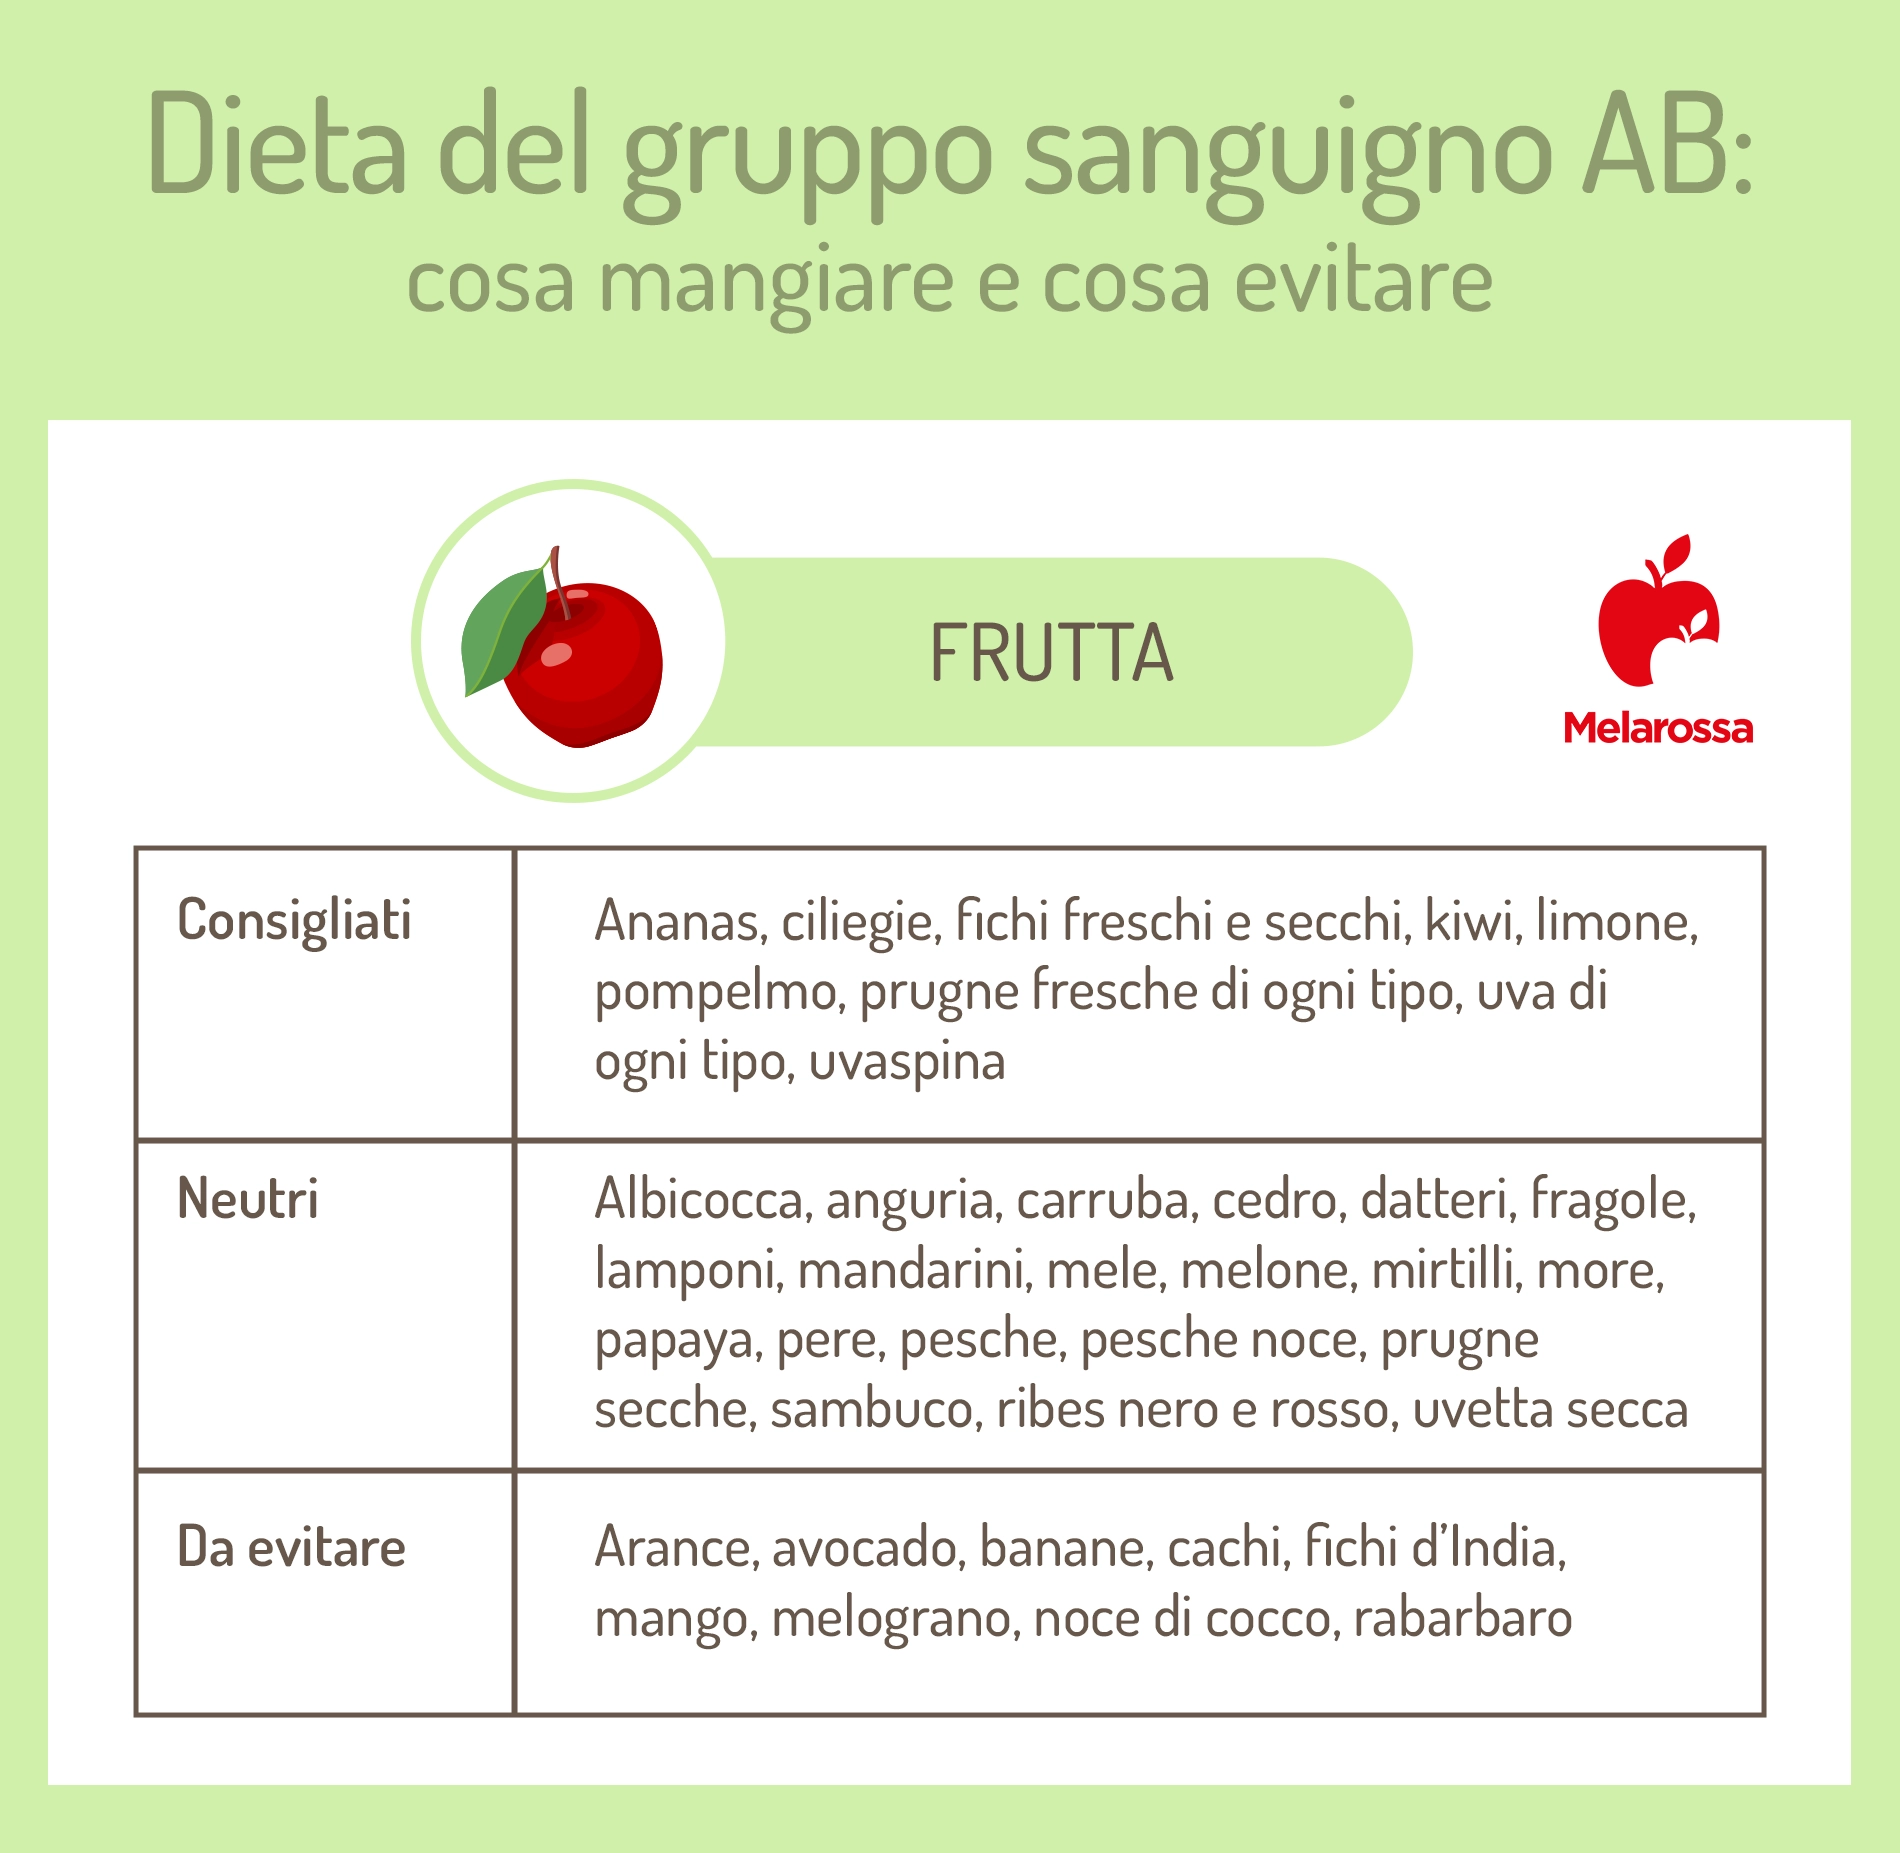 dieta gruppo sanguigno AB: frutta